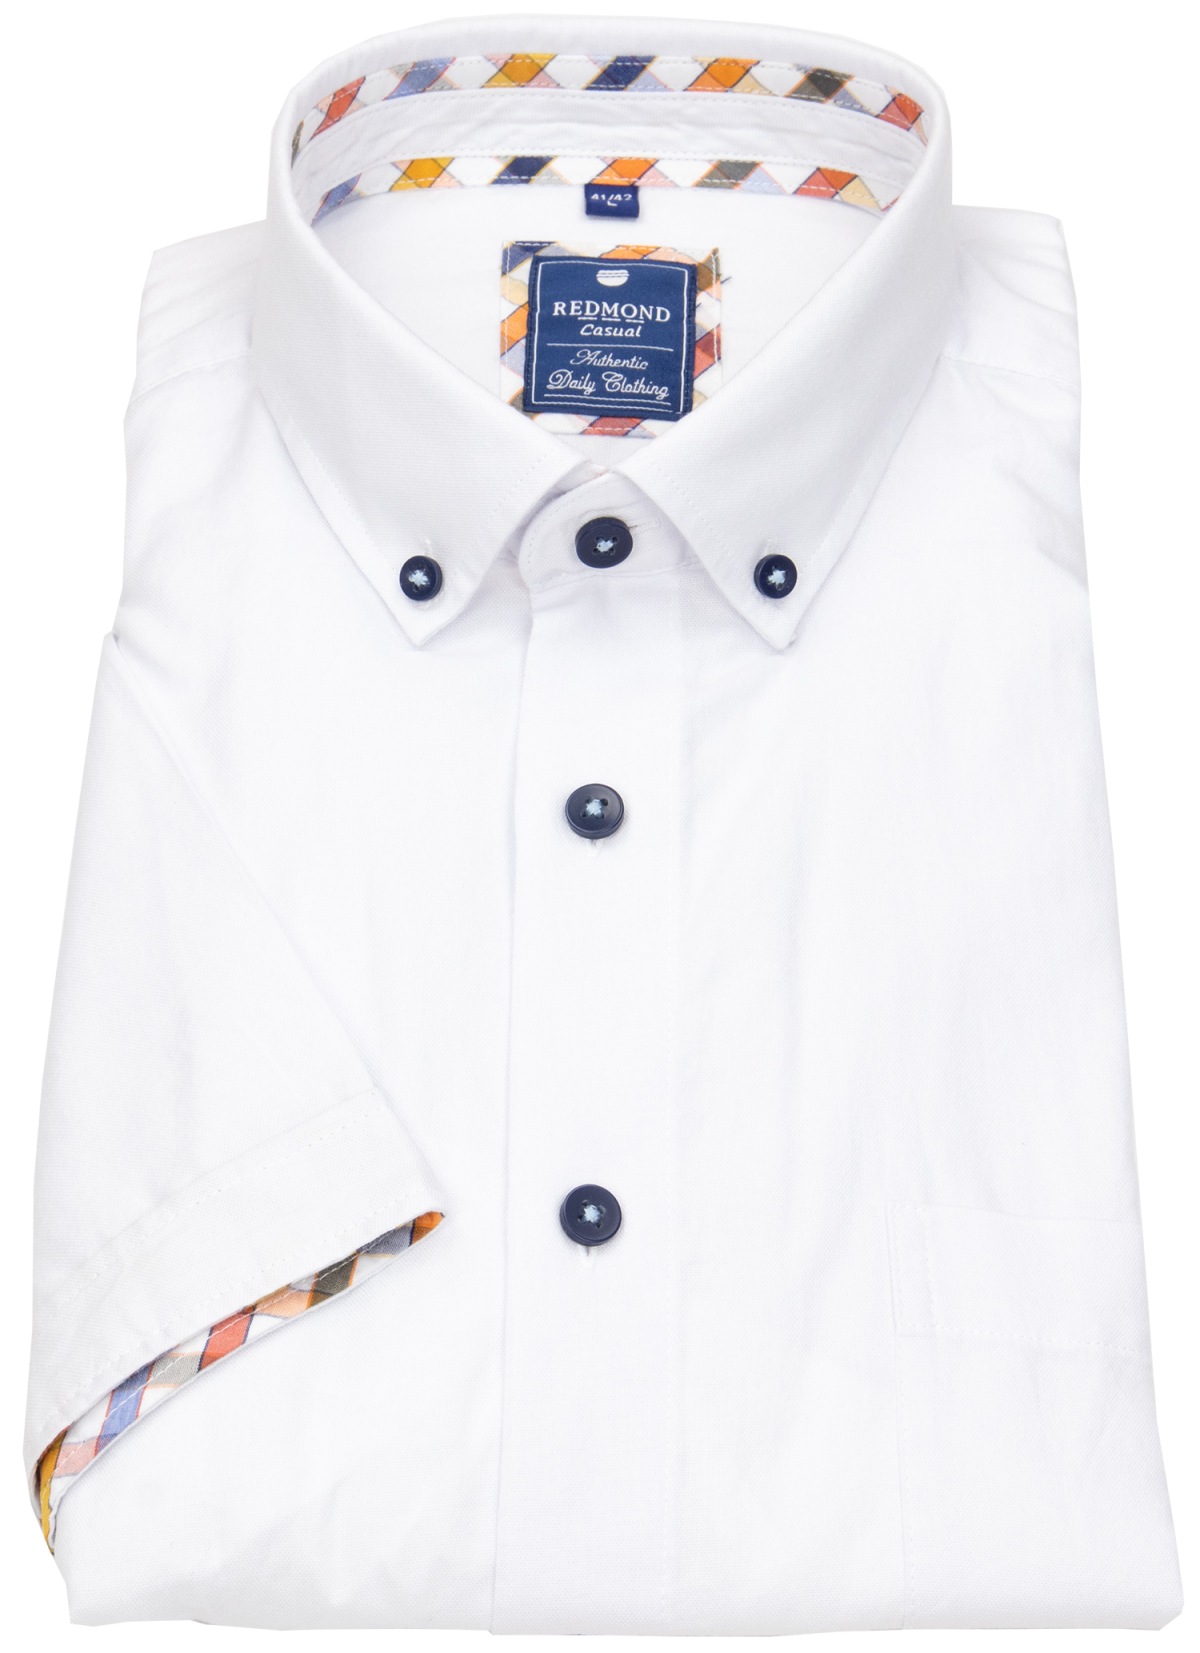 Redmond - Kurzarmhemd - Comfort Fit - Button Down Kragen - Kontrastknöpfe - weiß